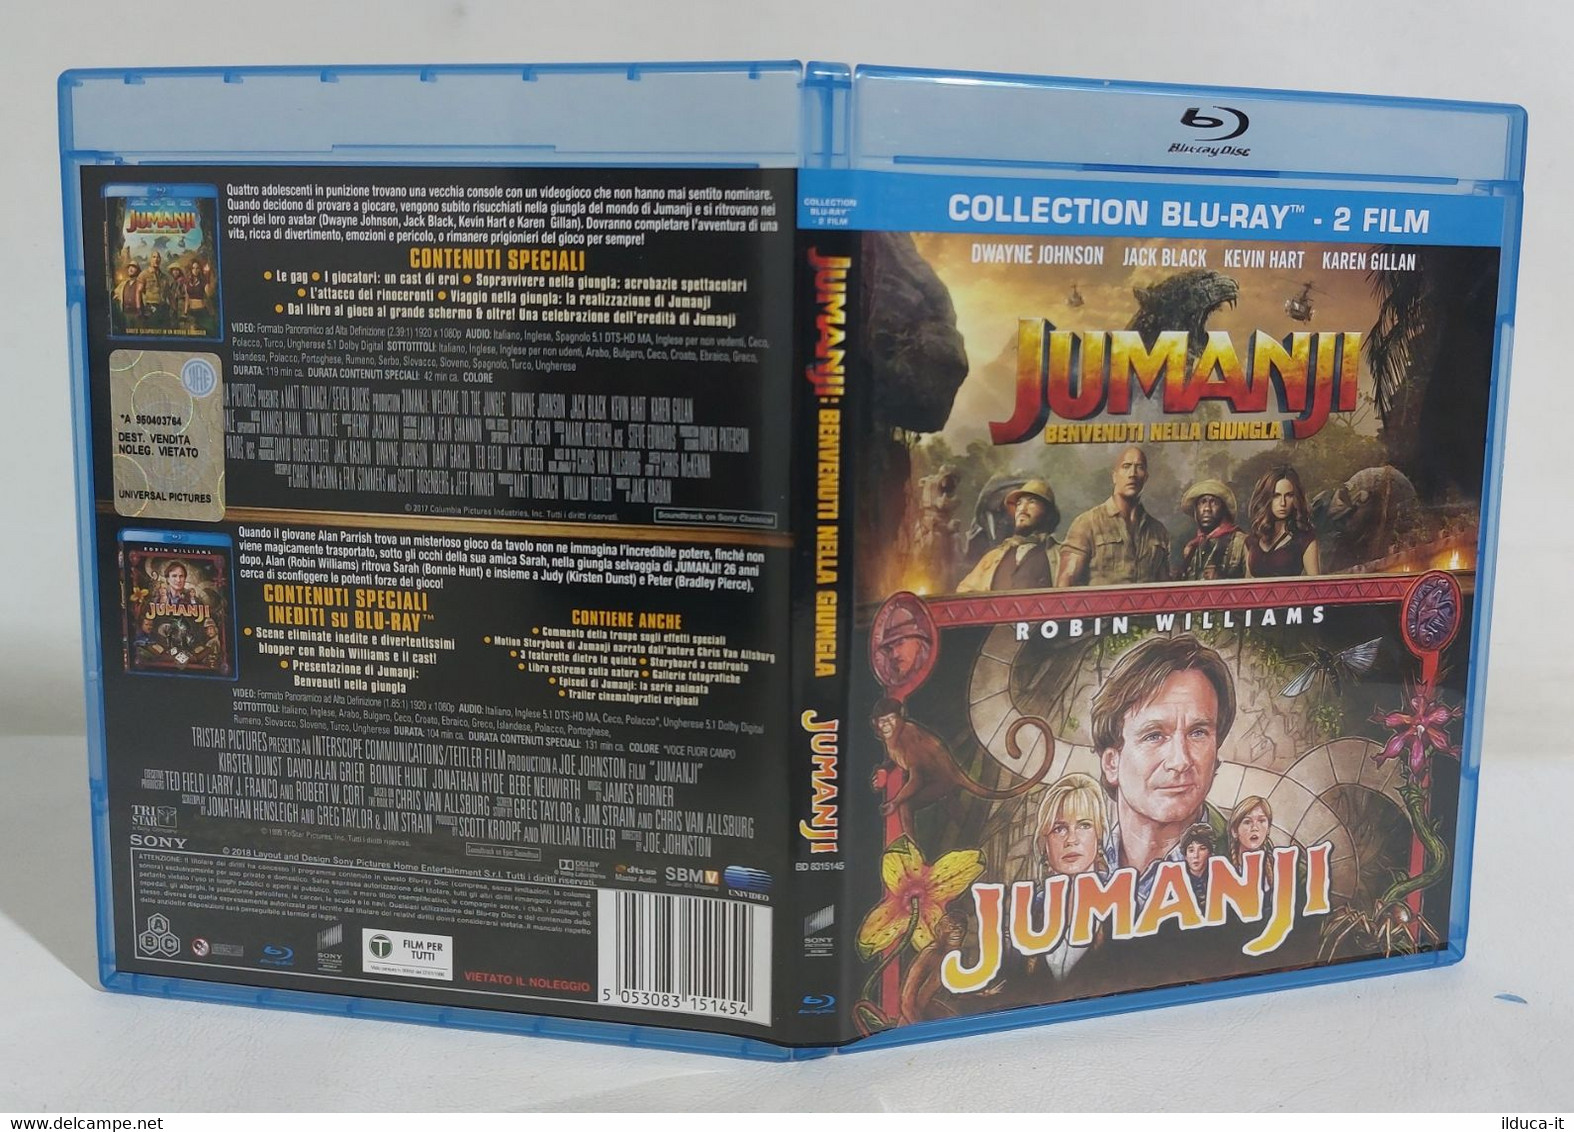 I109712 Blu-ray Collection 2 Film - Jumanji / Jumanji Benvenuti Nella Giungla - Mystery